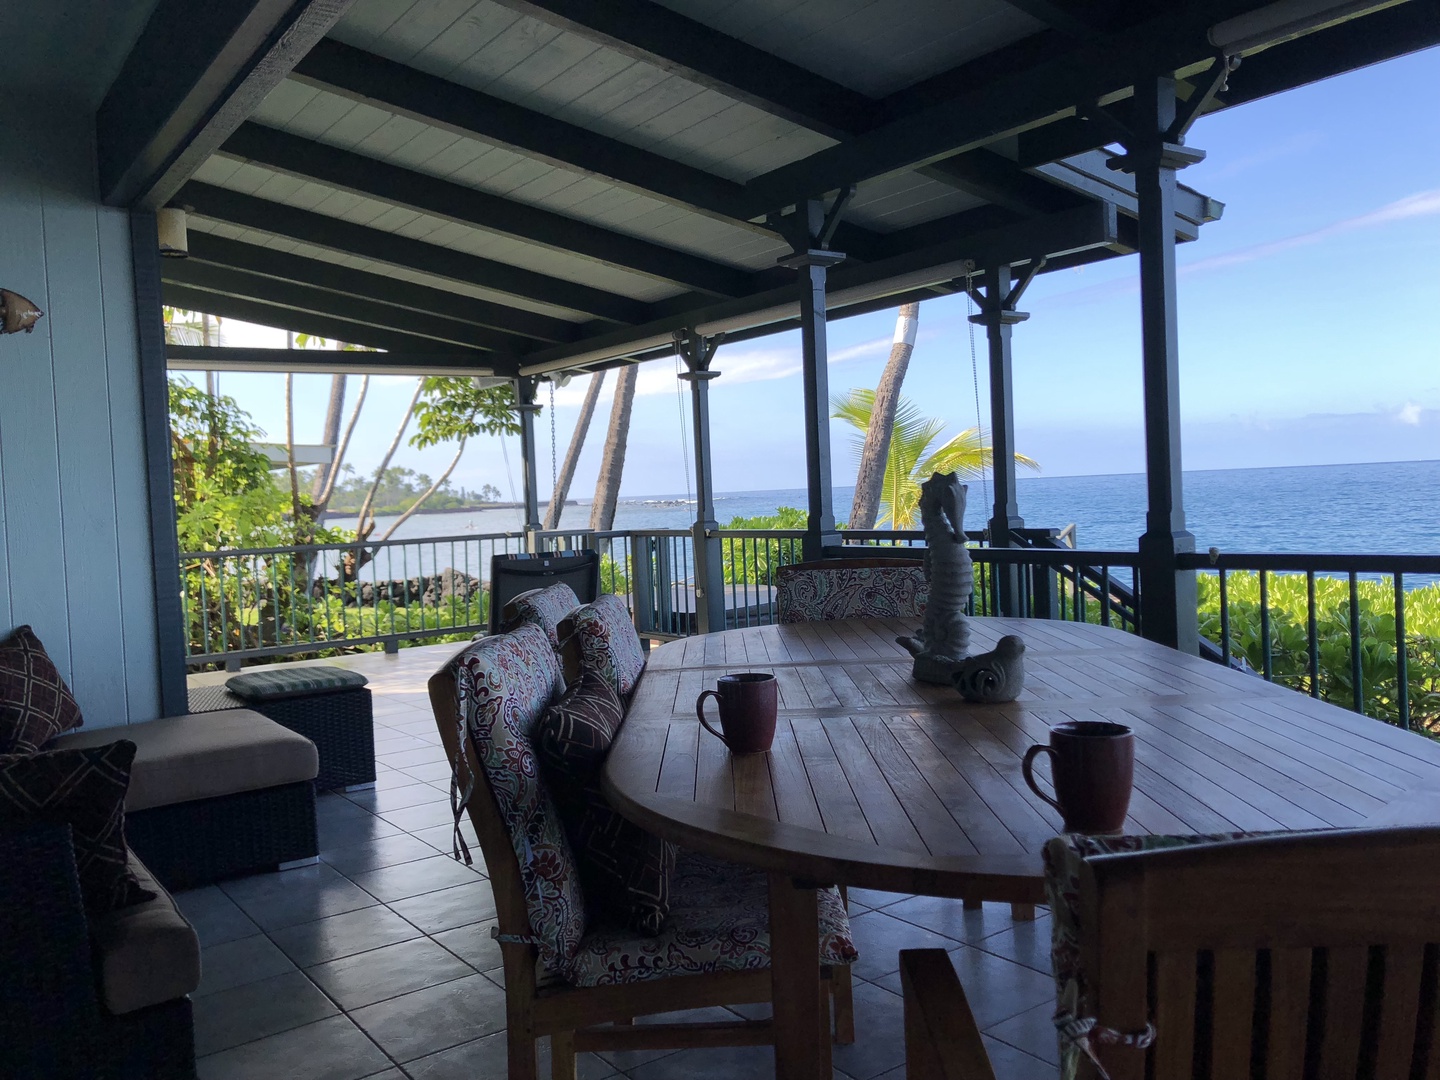 Kailua Kona Vacation Rentals, Hoku'Ea Hale - Dining table with outrageous views!